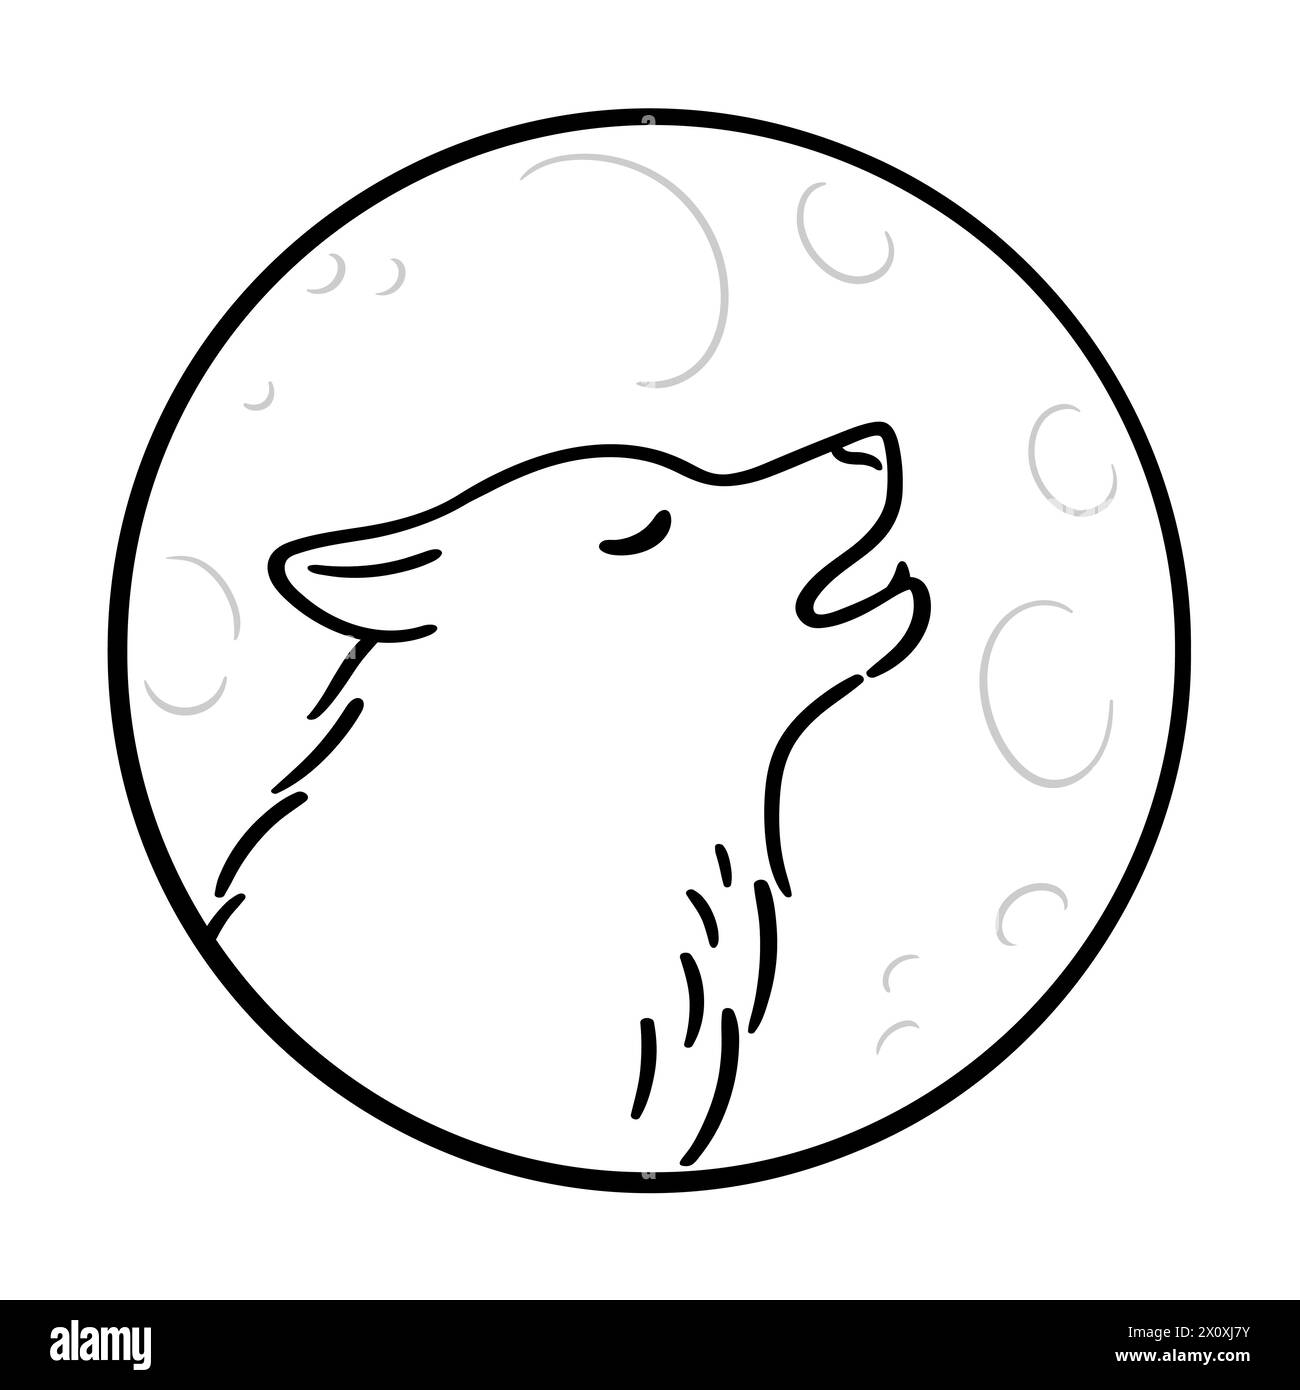 Lobo aullando en la luna, línea de dibujo en blanco y negro. Simple doodle de perfil de cabeza de lobo en círculo. Ilustración vectorial. Ilustración del Vector